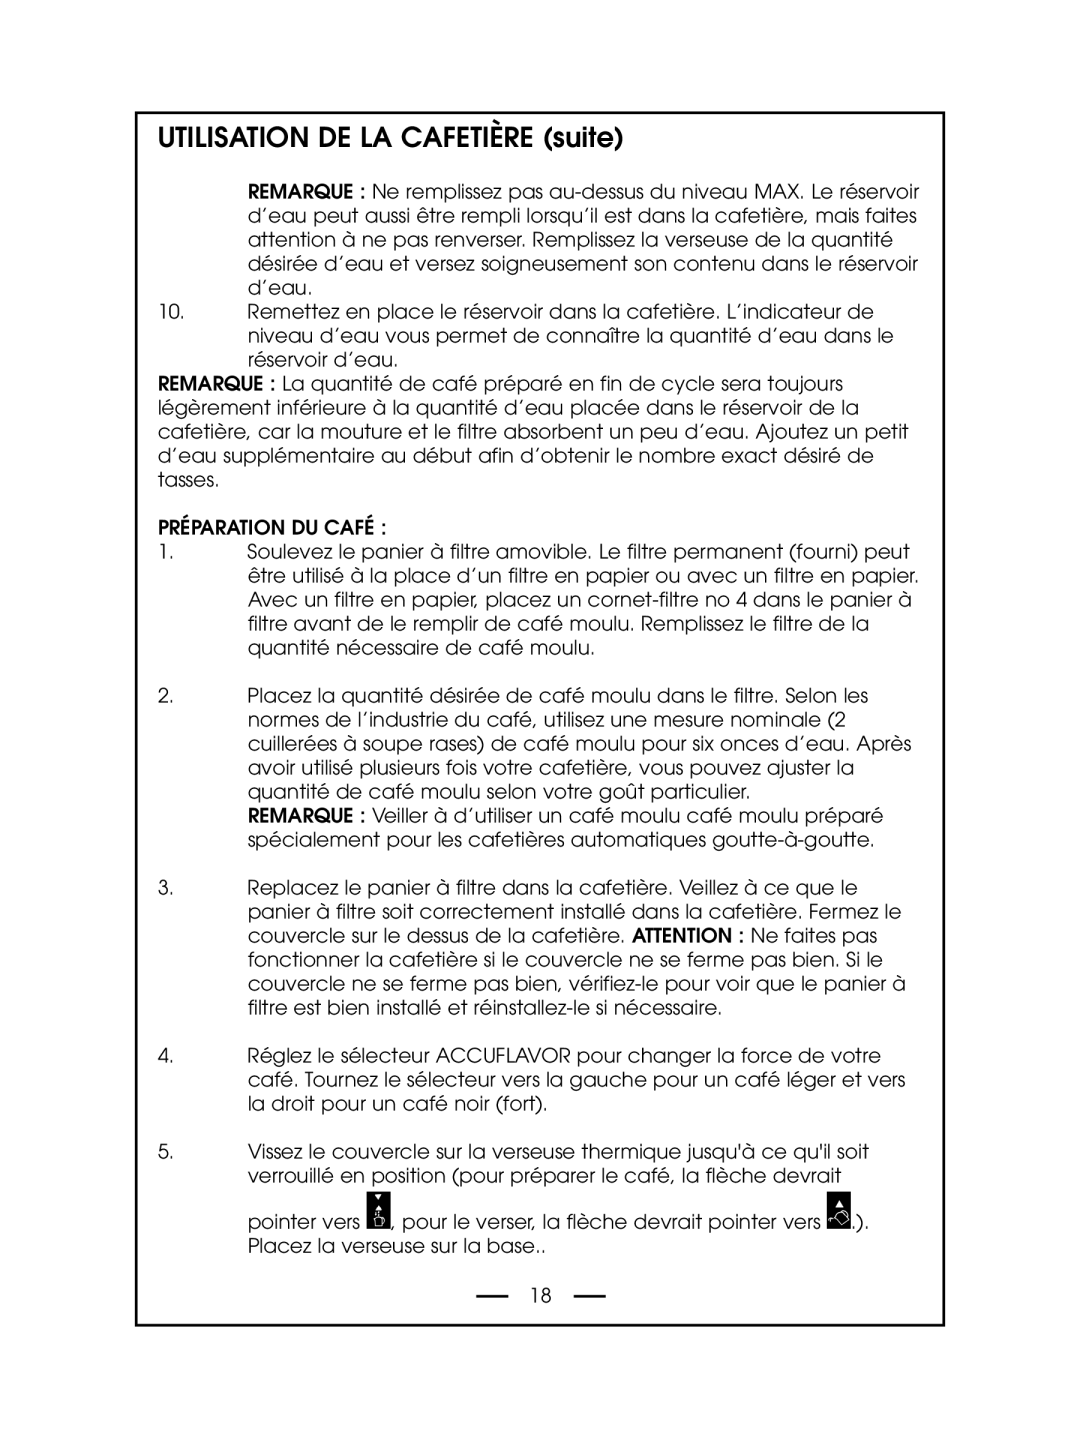 DeLonghi DCM485 instruction manual UTILISATION DE LA CAFETIÈRE suite 